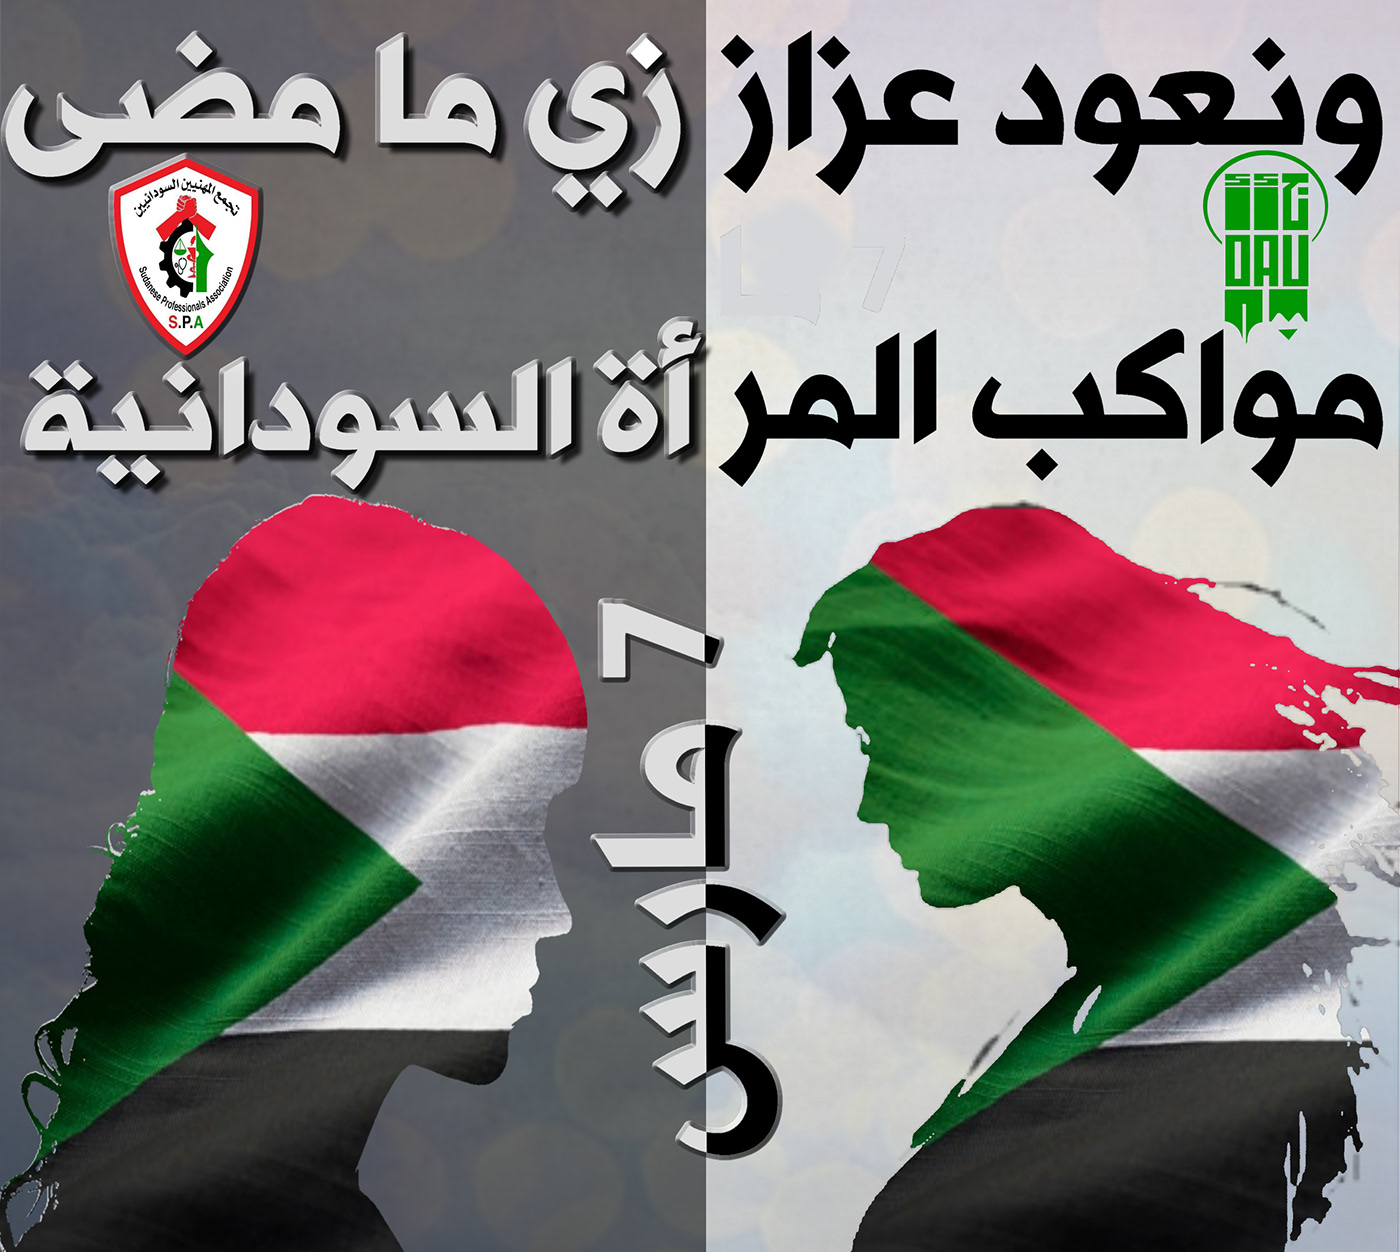 sudan uprising sudan revolution تسثط بس #تسثط_بس tasqot bass